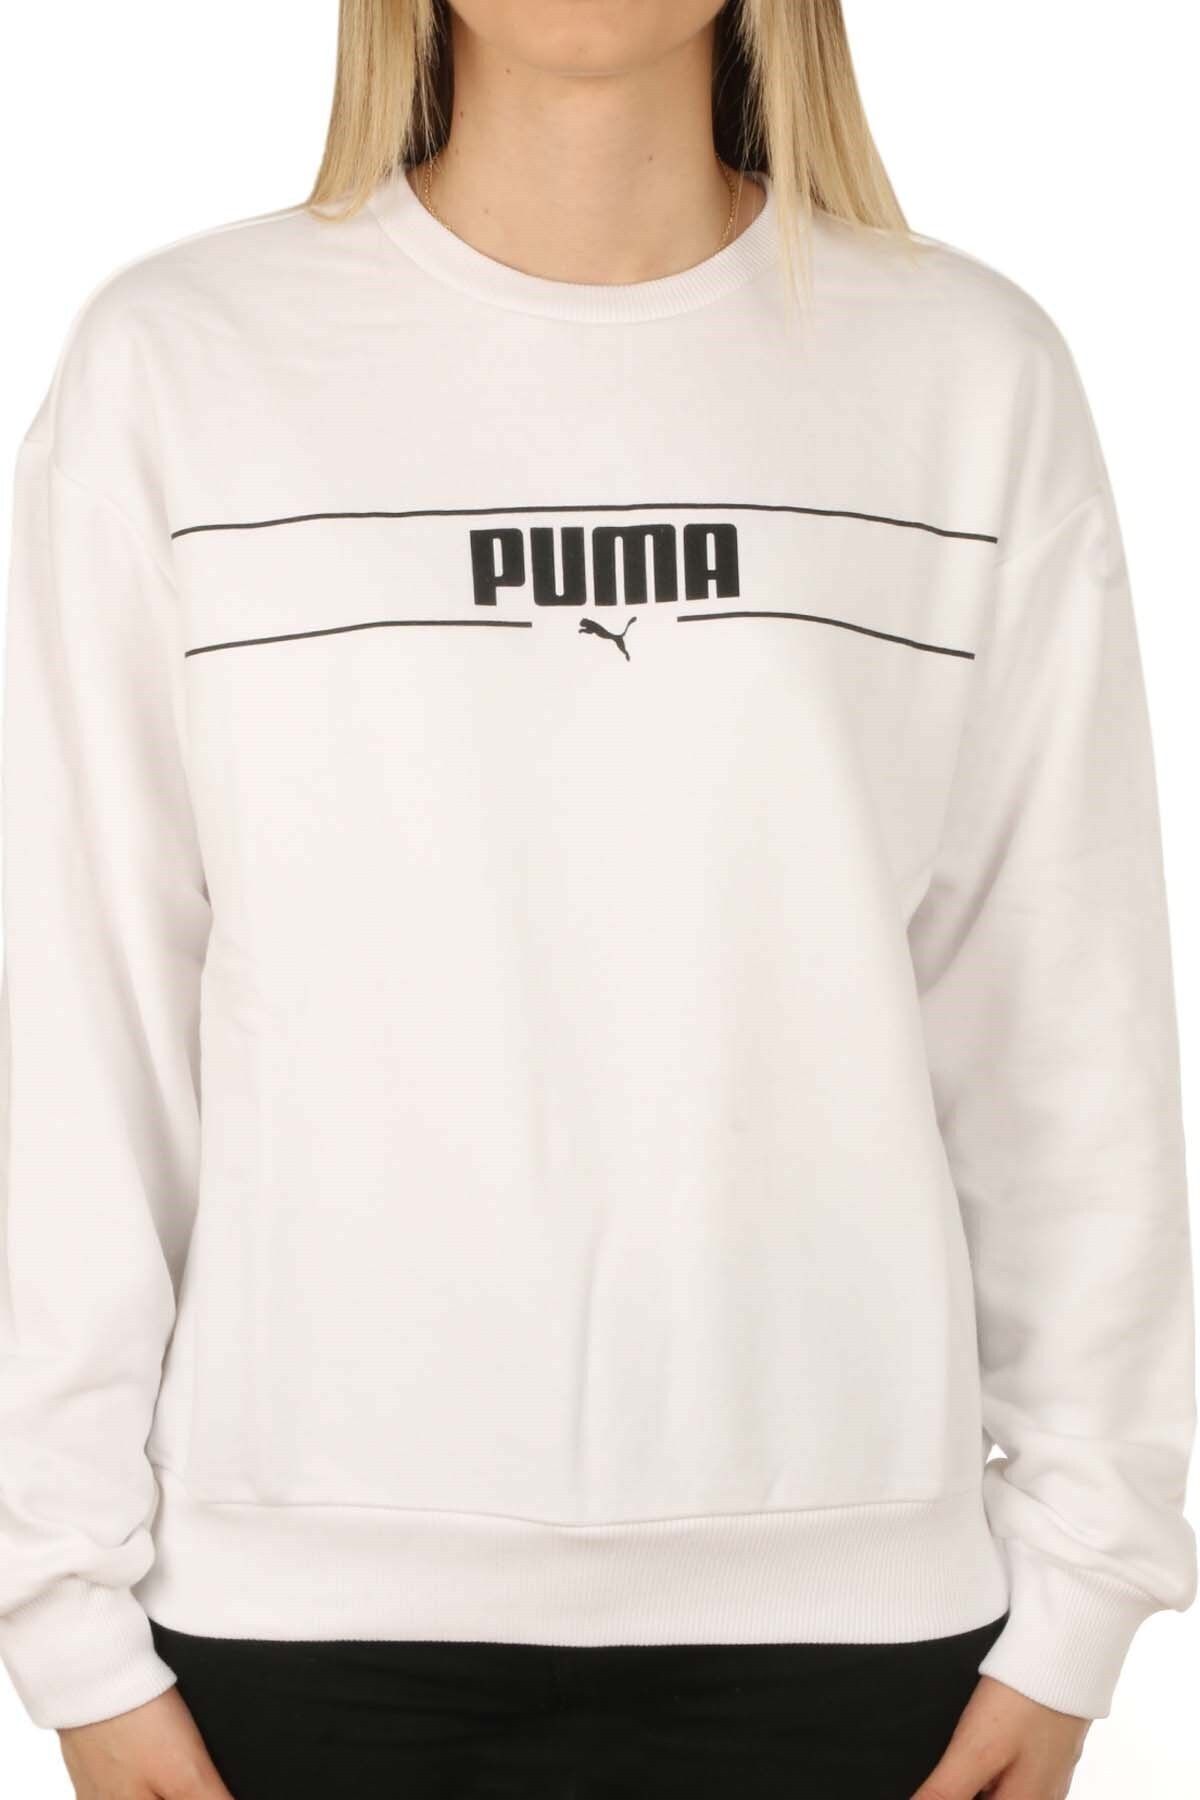 Puma Kadın Beyaz Sweatshirt 586401 02 Blank Base Crew